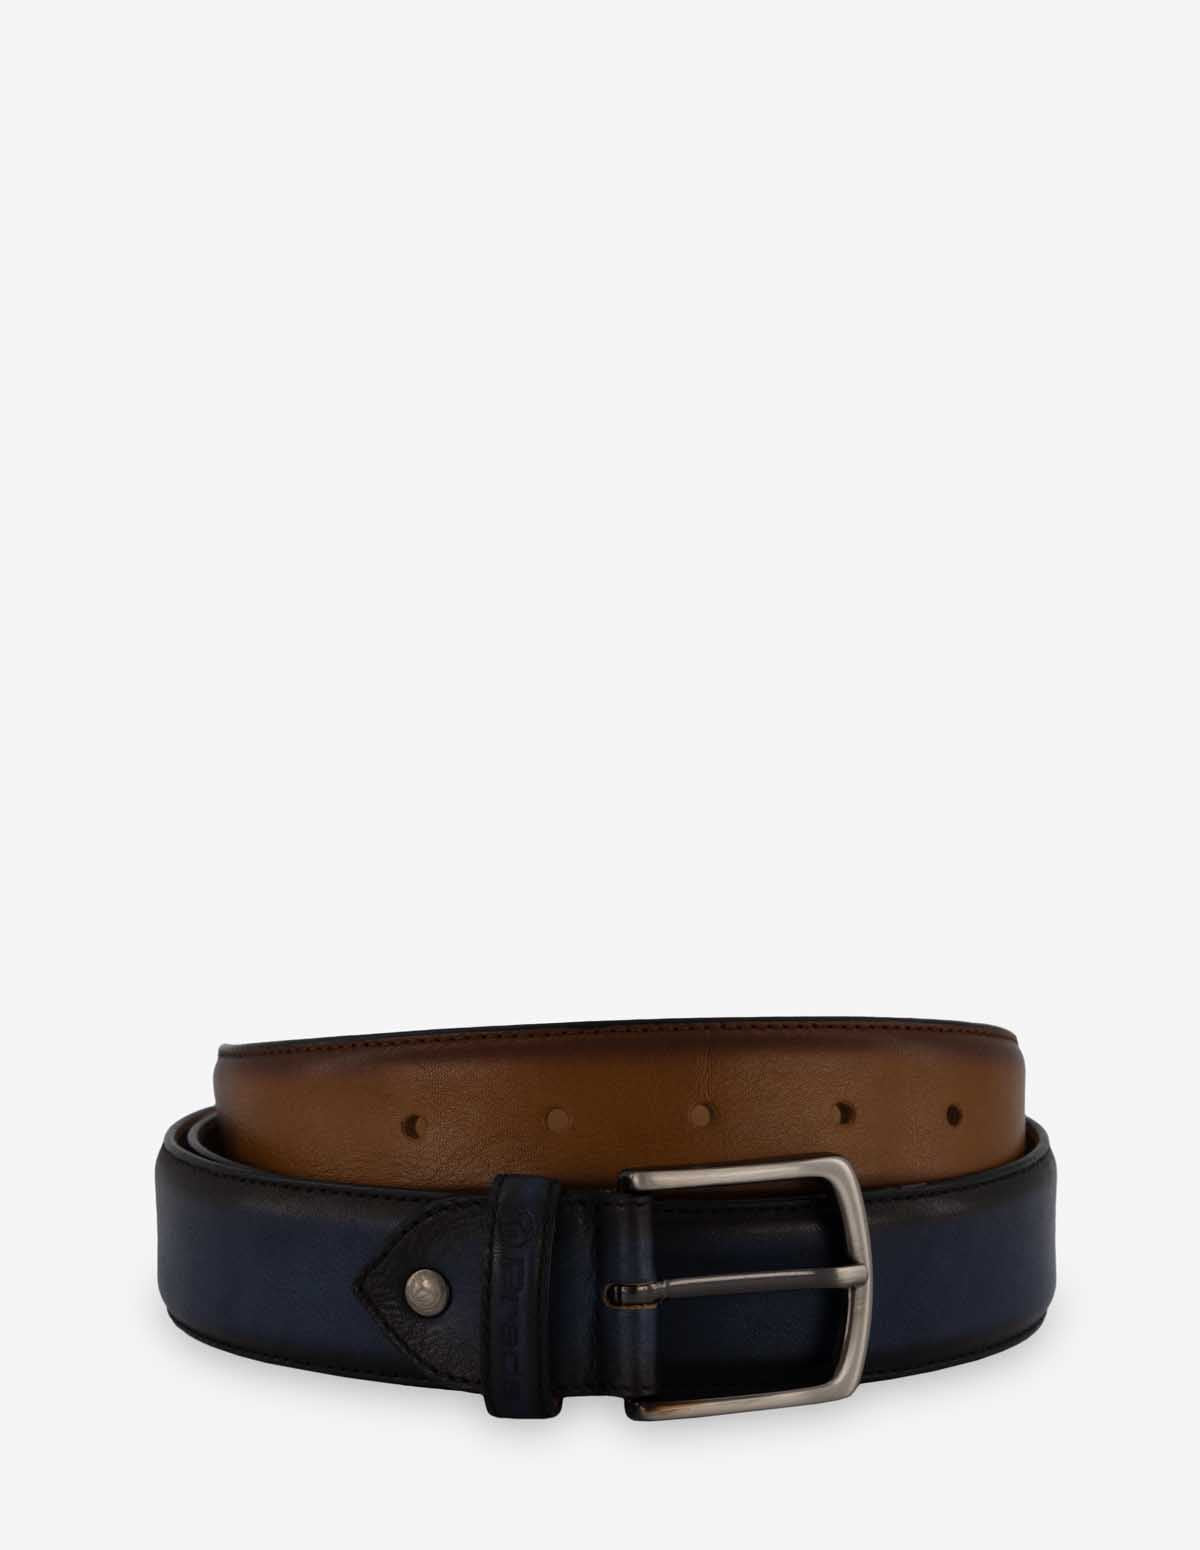 Cinturón en piel caoba con azul para hombre